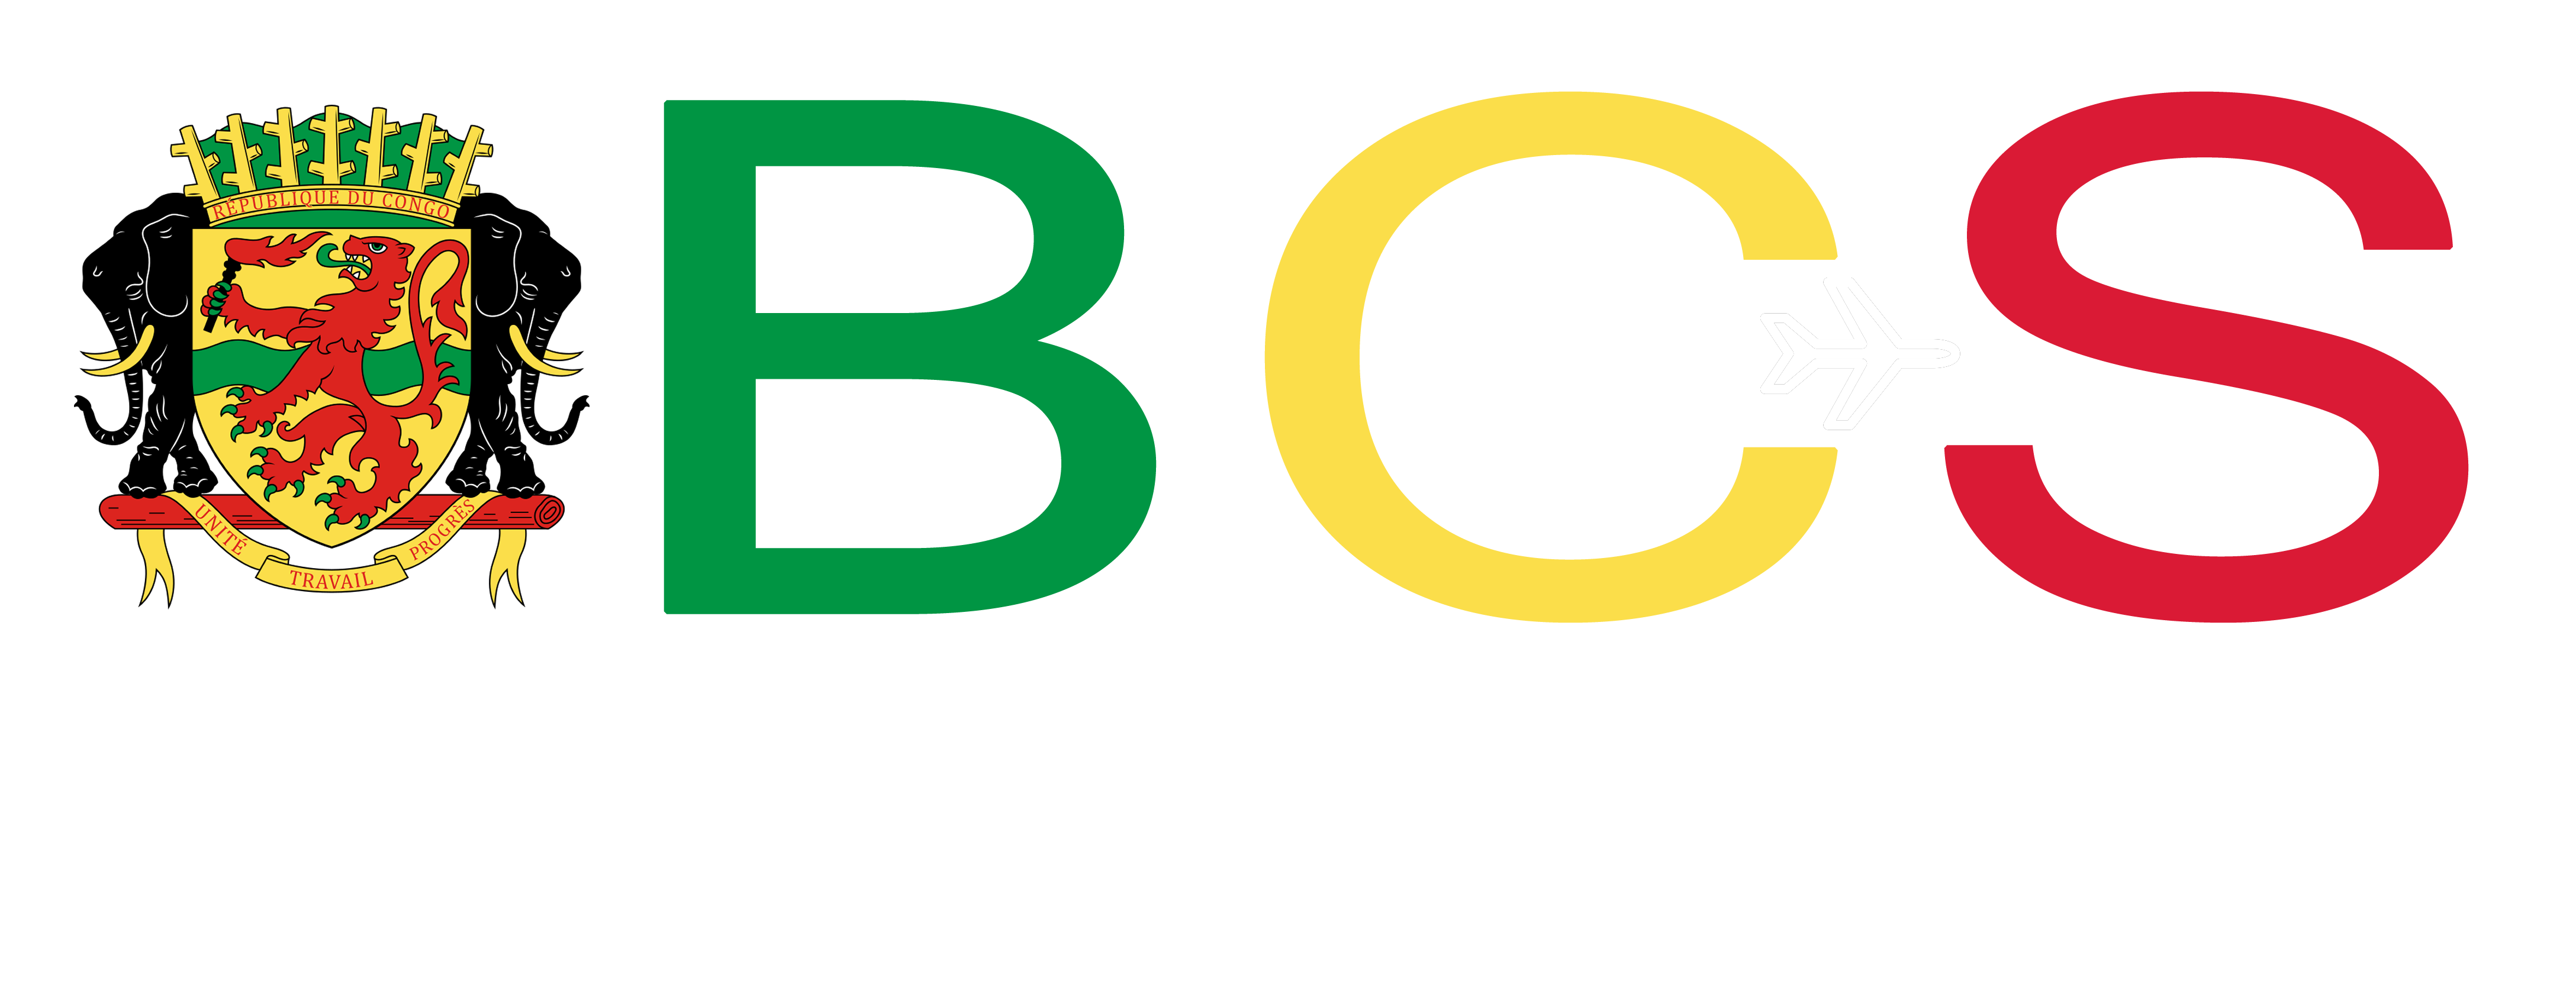 Logo BCS